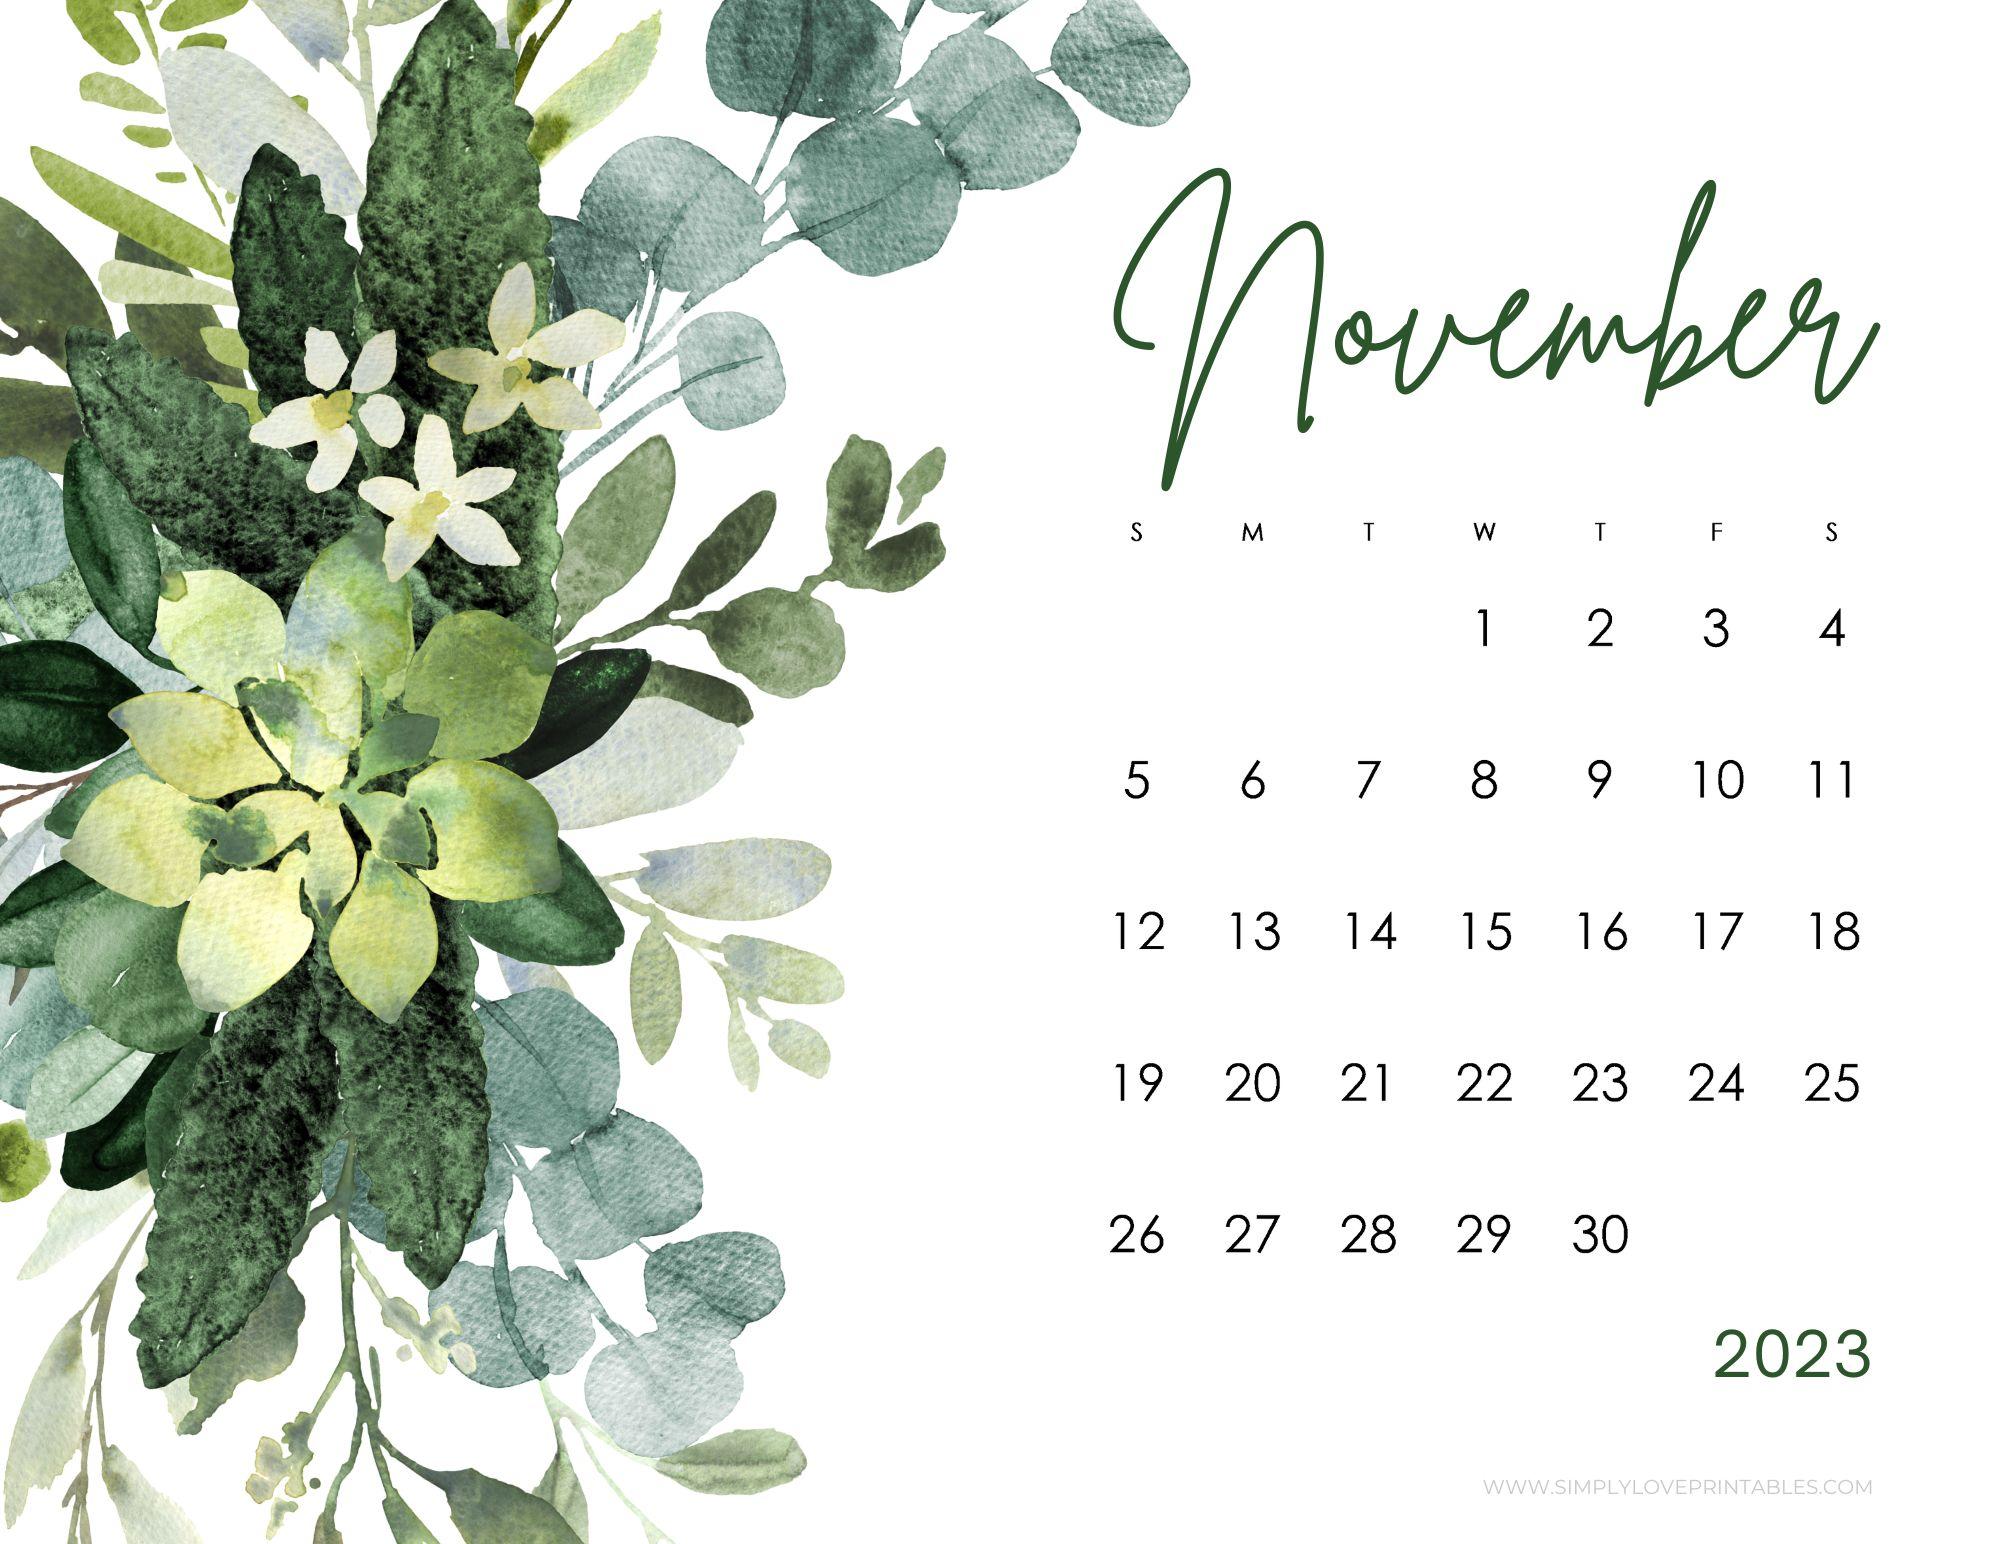 November Calendars Simply Love Printables